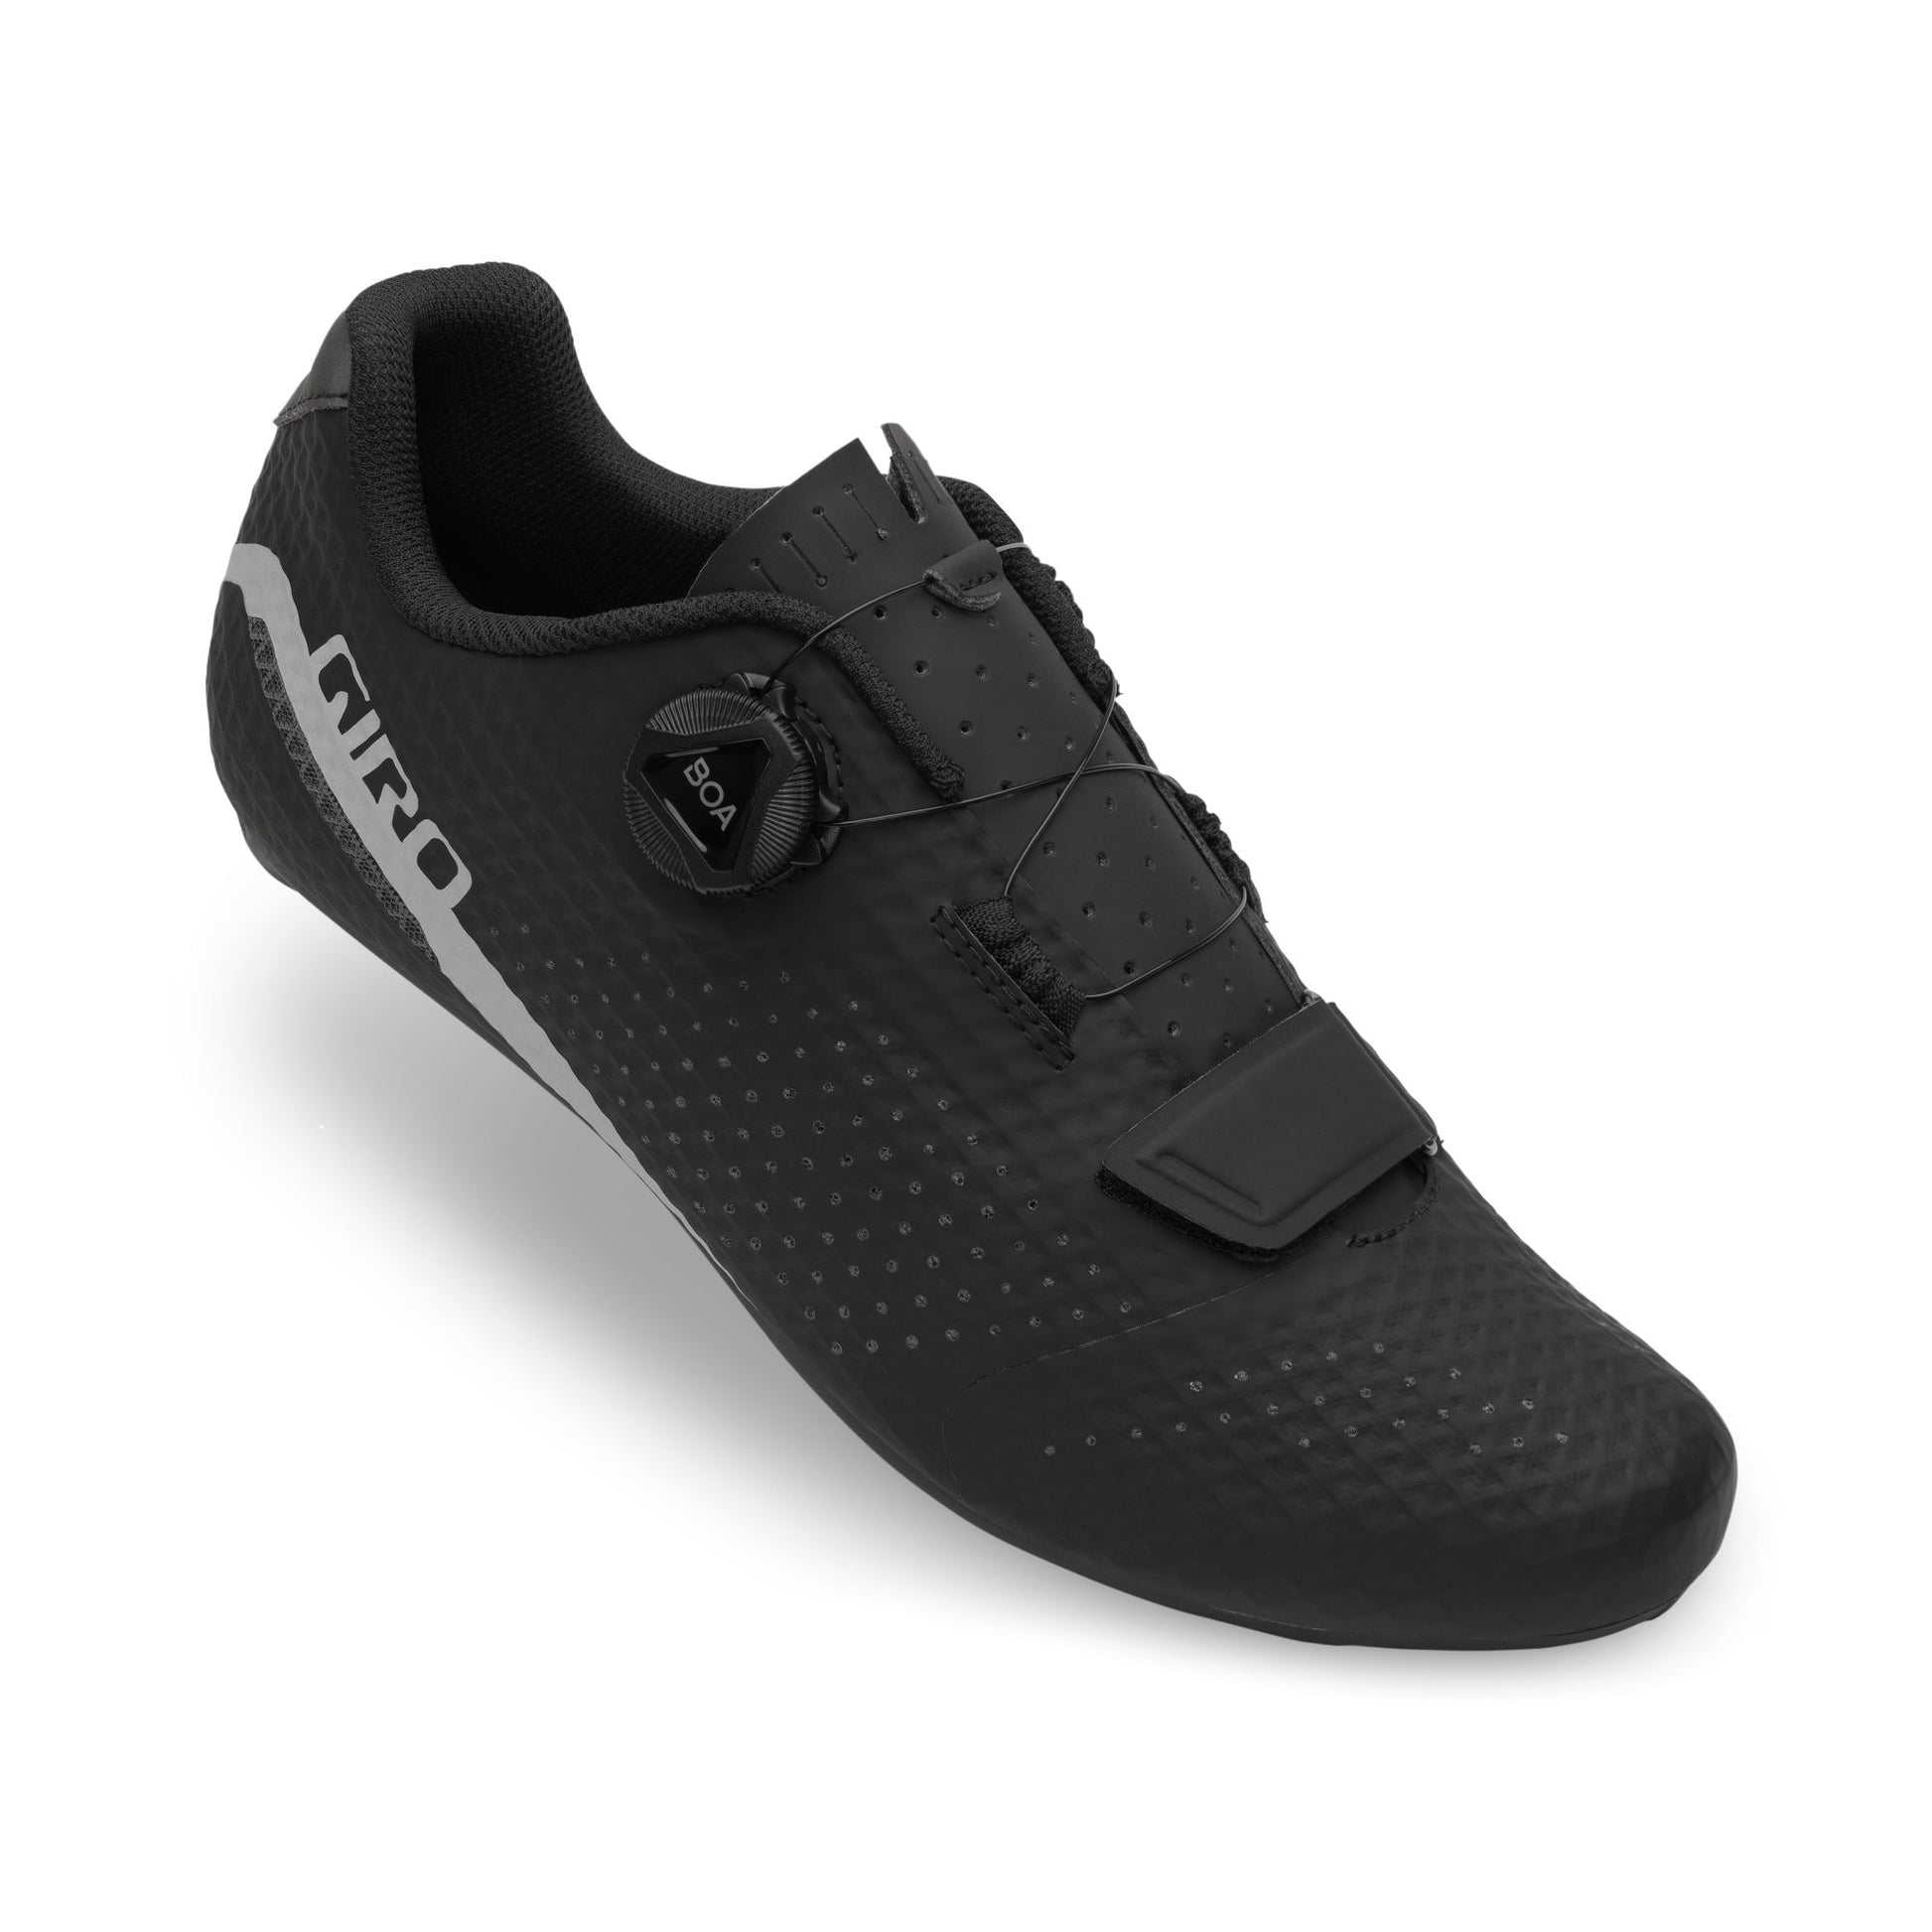 Giro Cadet Shoe Black Bike Shoes